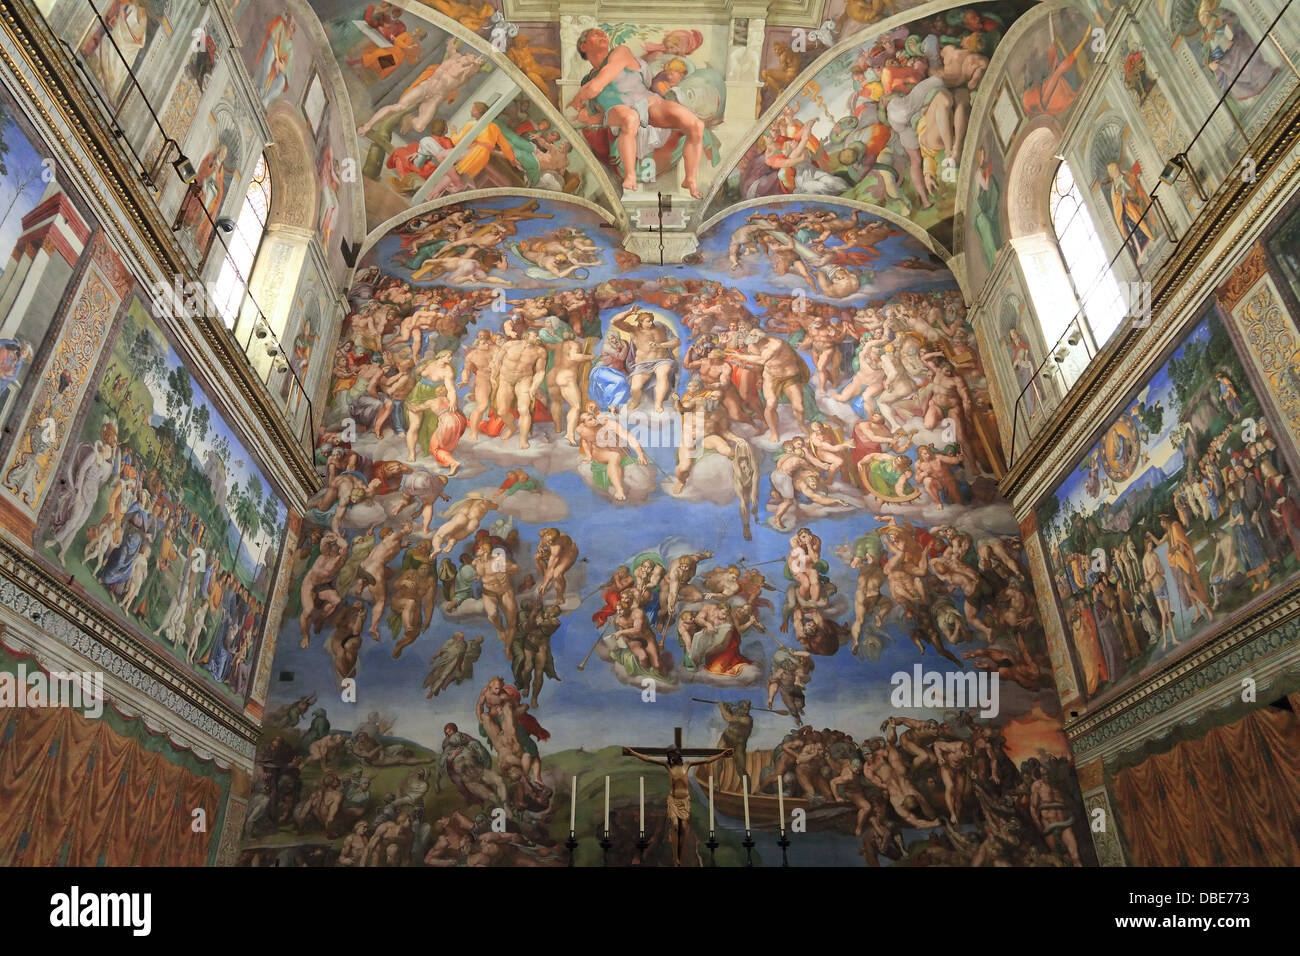 Fresko von Michelangelo in der Sixtinischen Kapelle, Vatikan